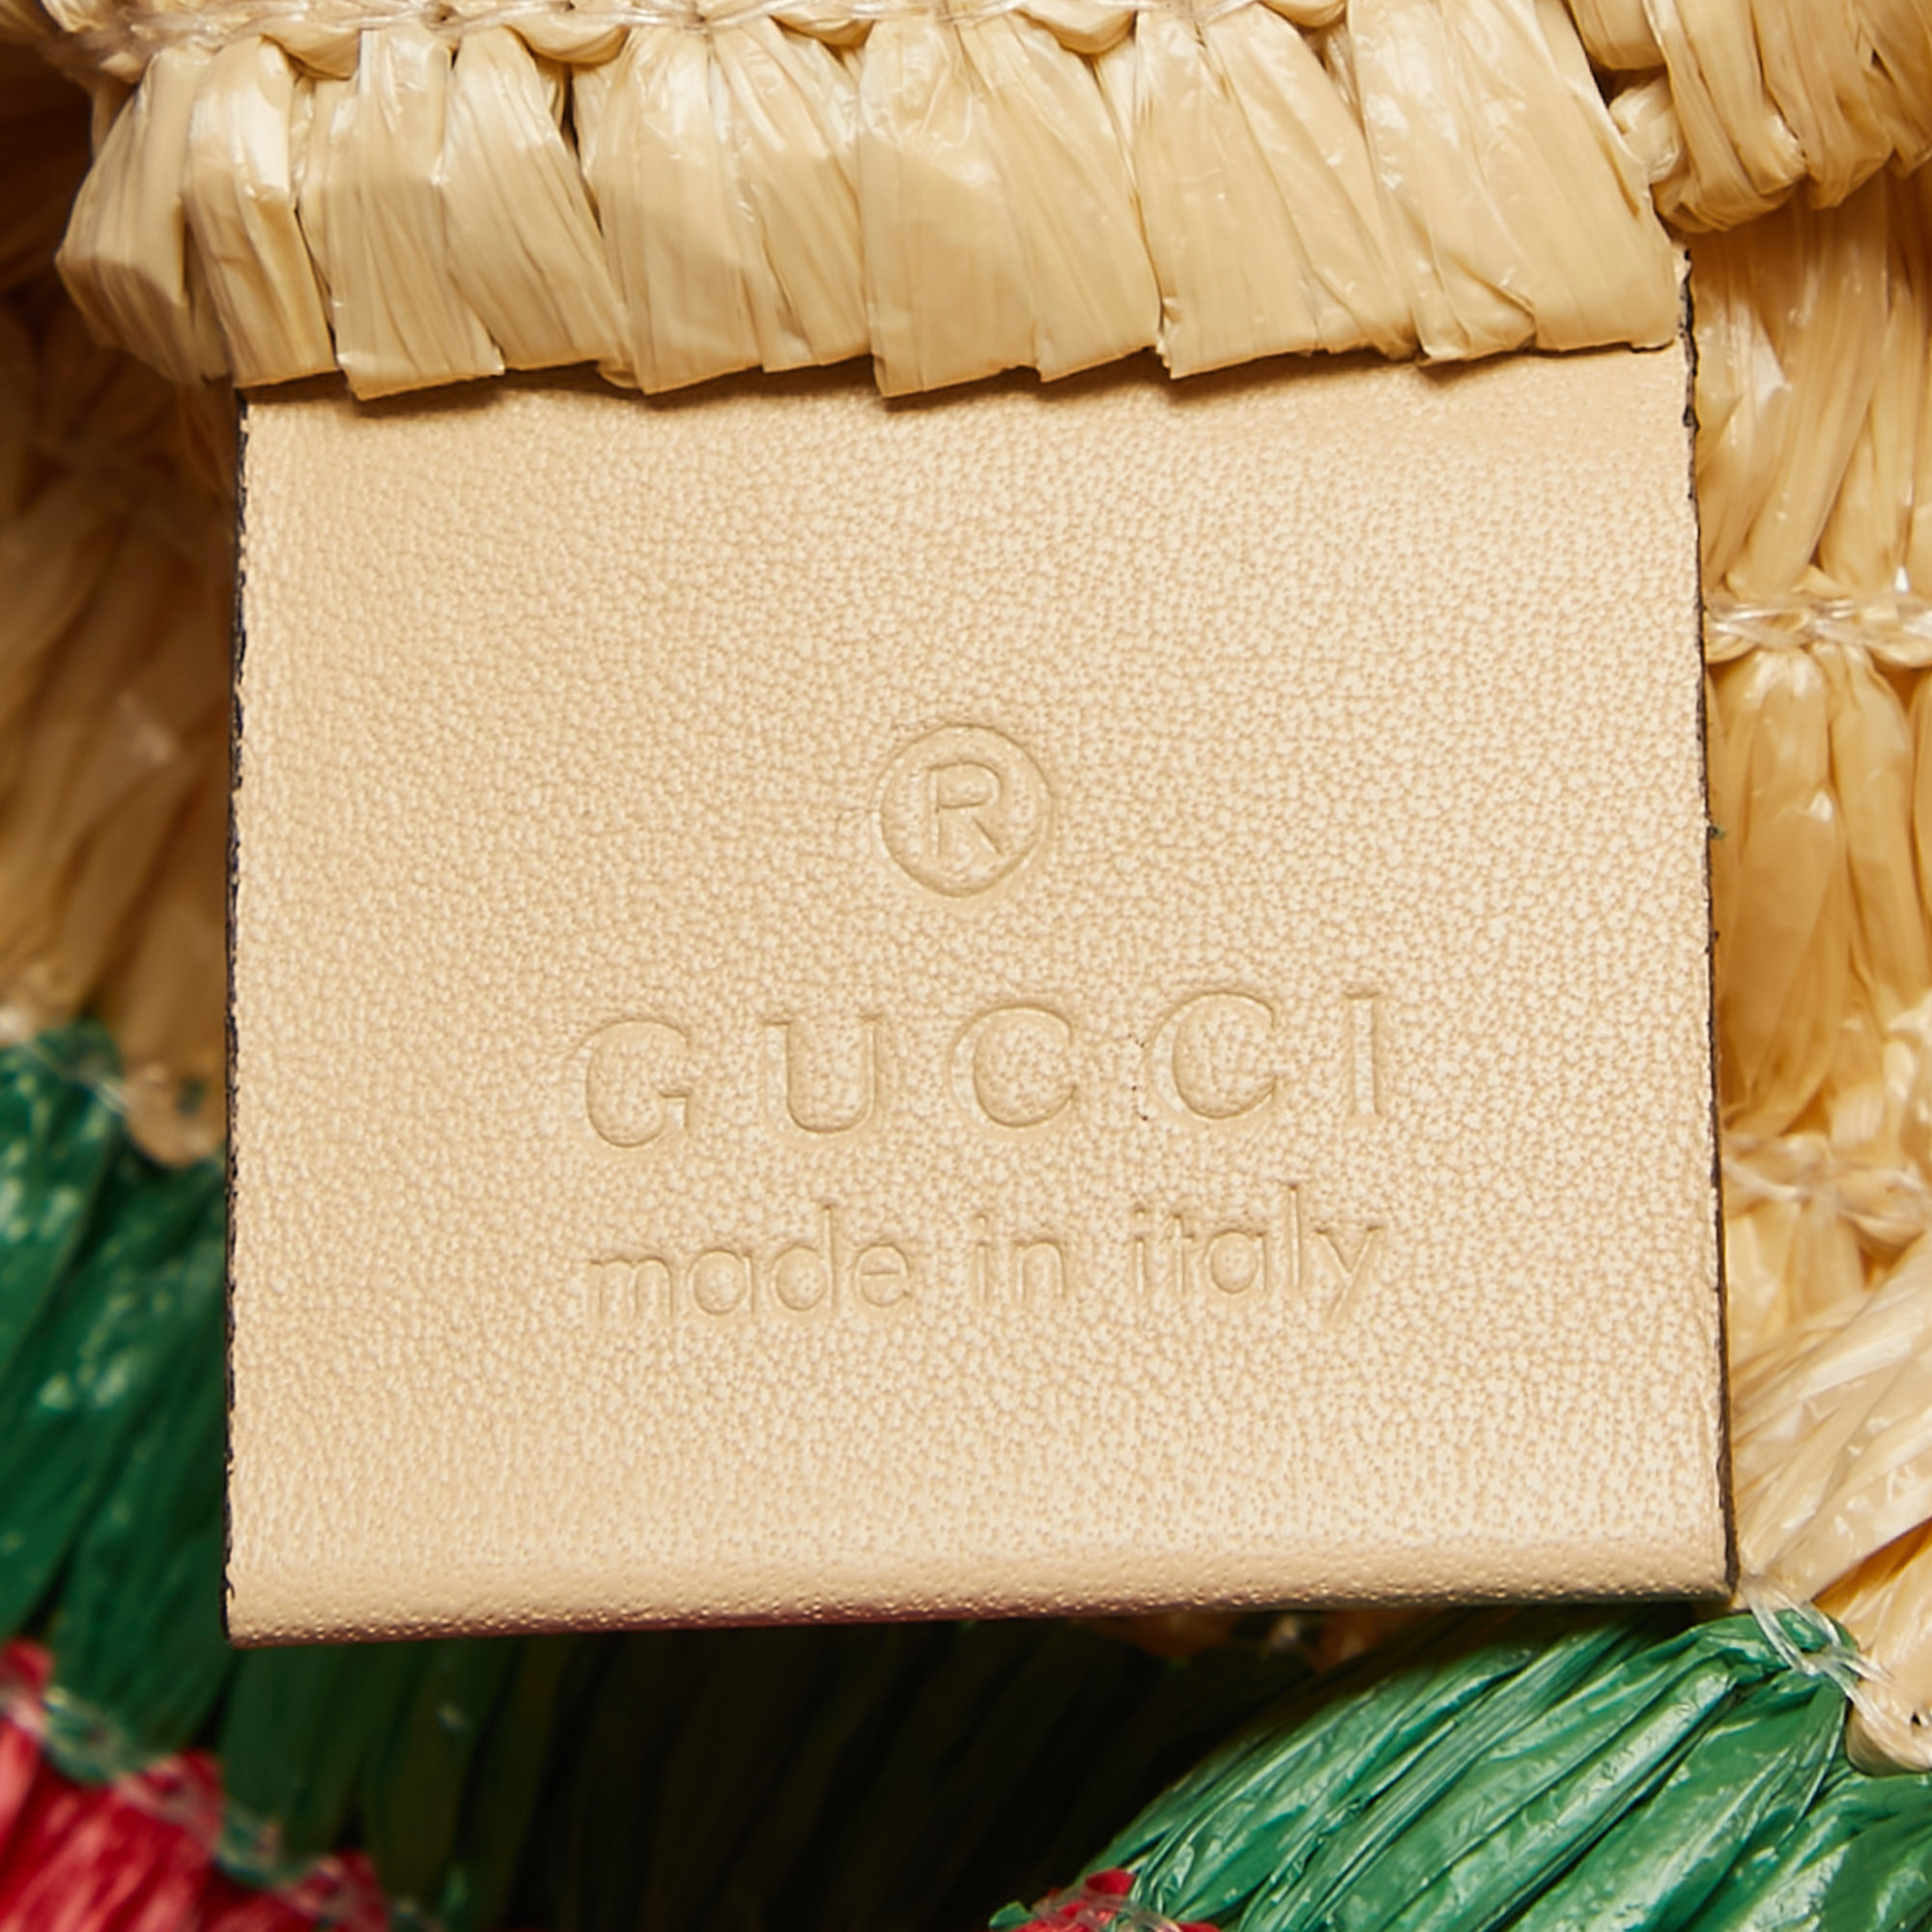 Gucci Natural/Multicolor Woven Straw Cestino Tote